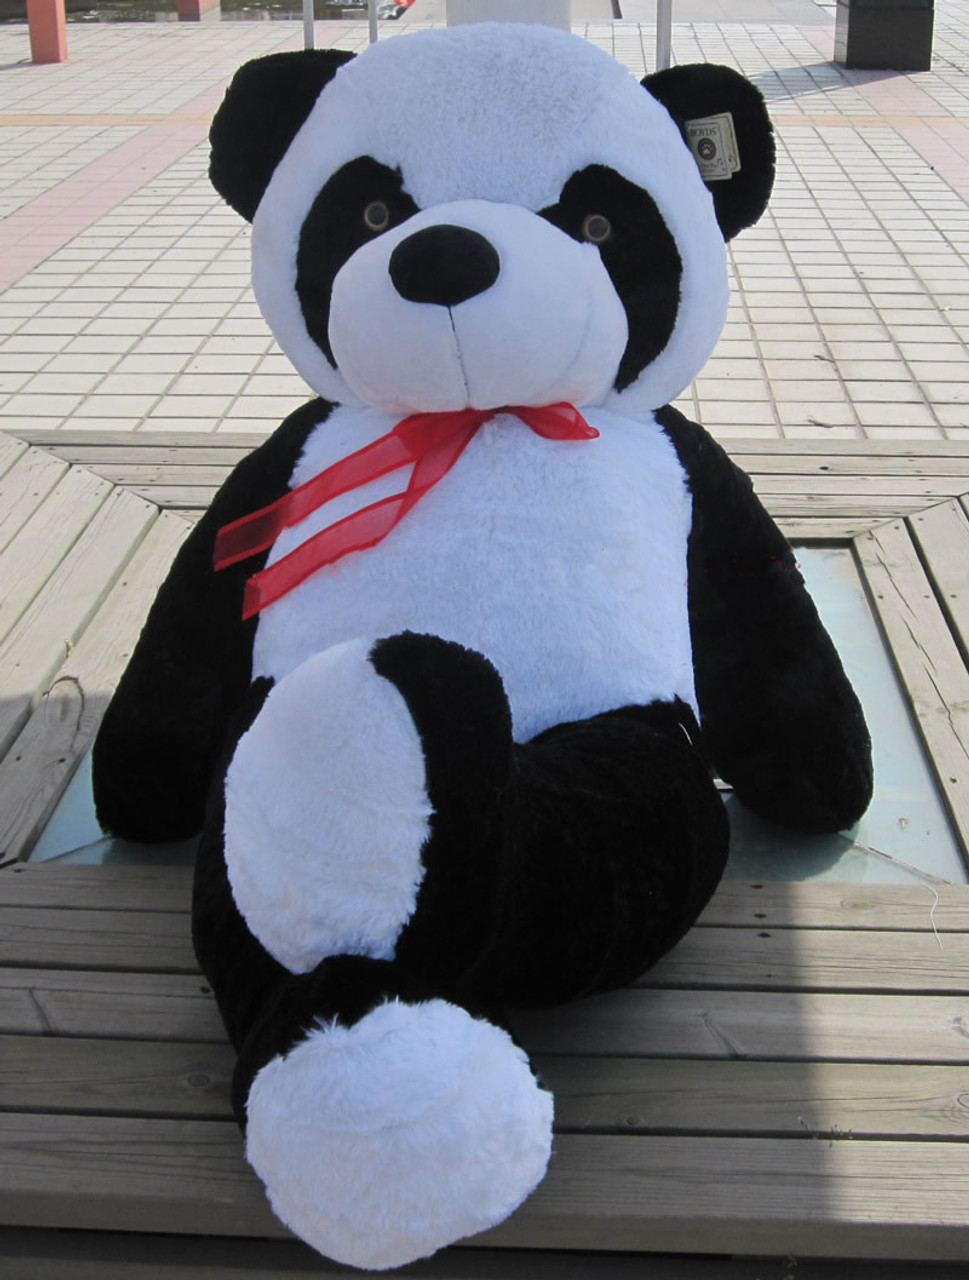 4 foot stuffed panda bear